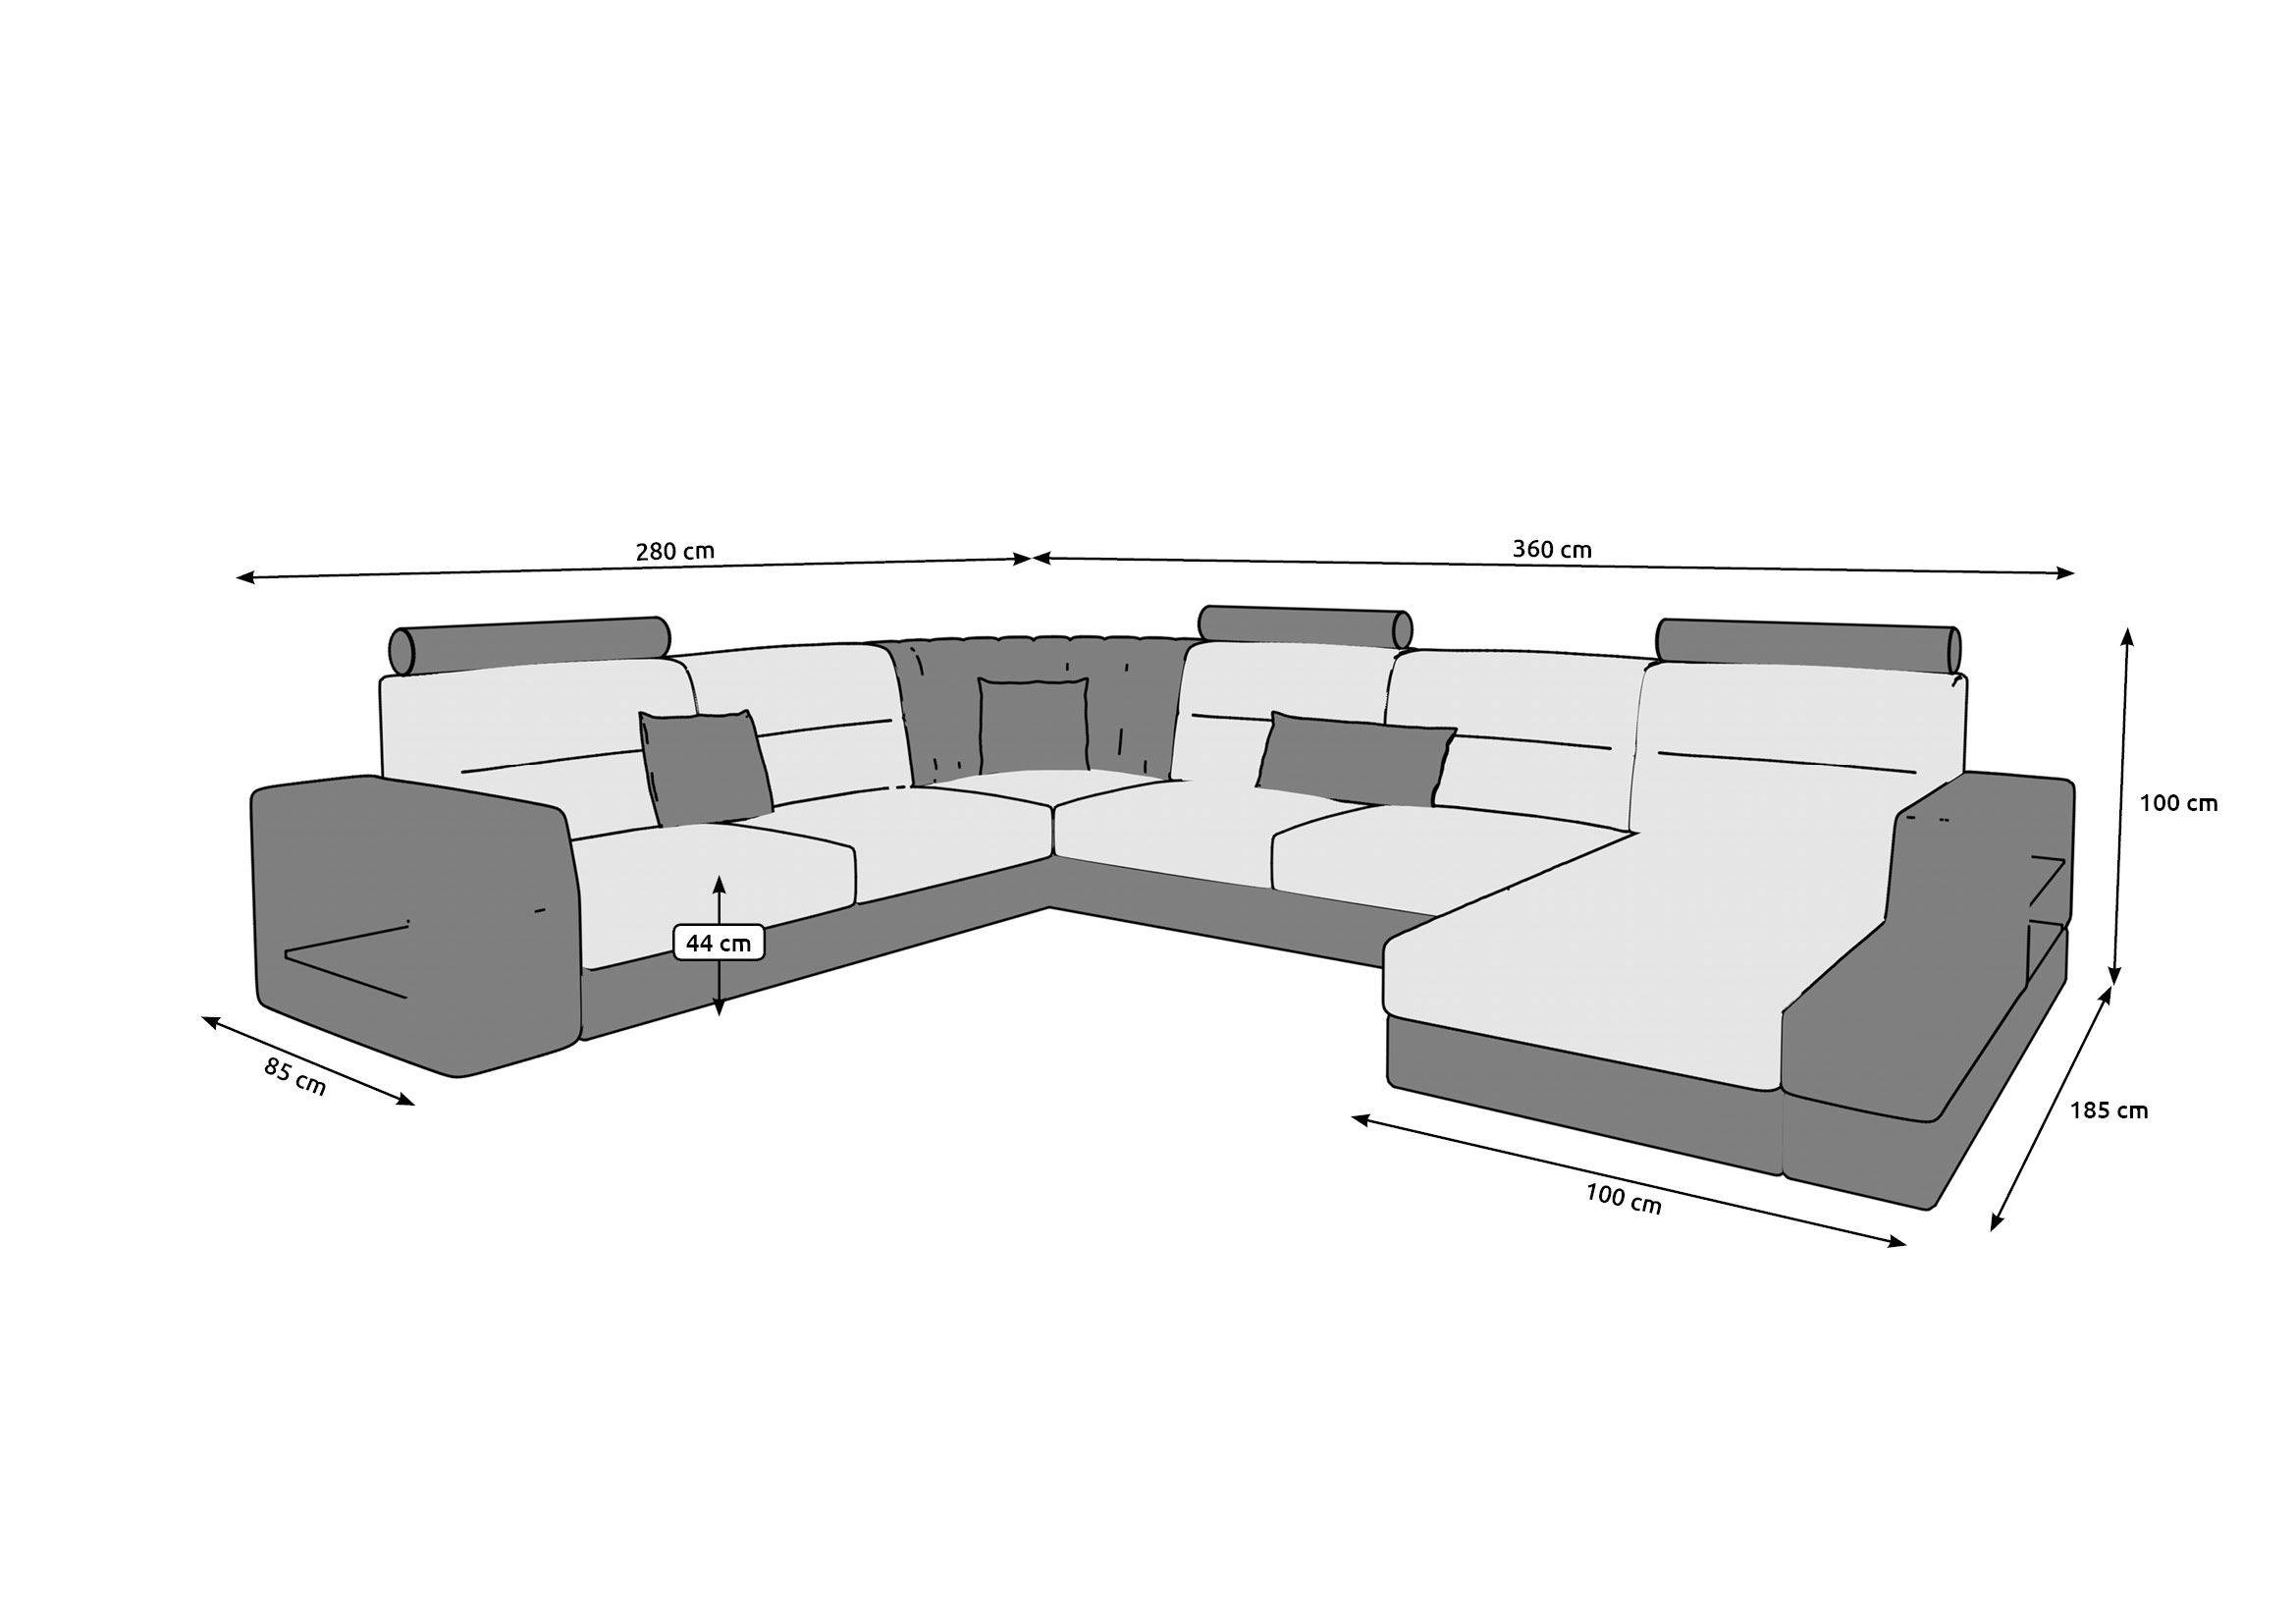 Образцы угловых диванов. как правильно выбрать угловой диван